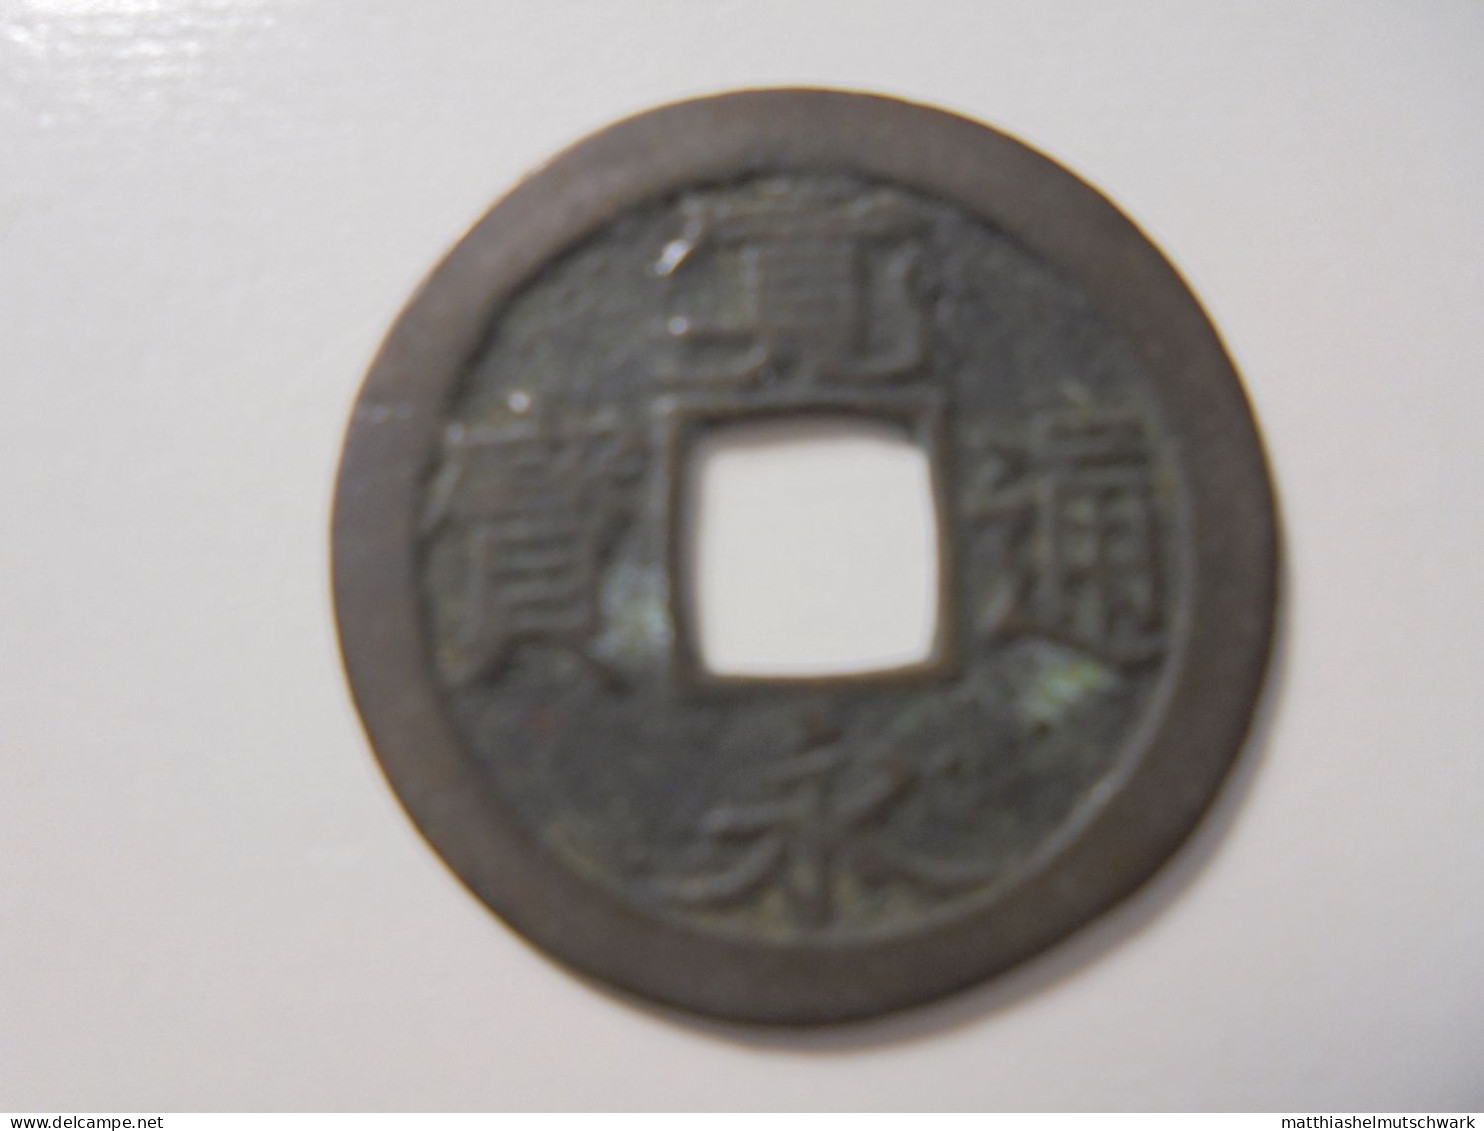 82x1 Mon 1736  		1 Mon, 1736 Kwan-Ei Tsu-Ho Kupfer, 3g, ø 24mm C# 1.5 · Umlaufmünzen Preis: € 5.82 - Japan